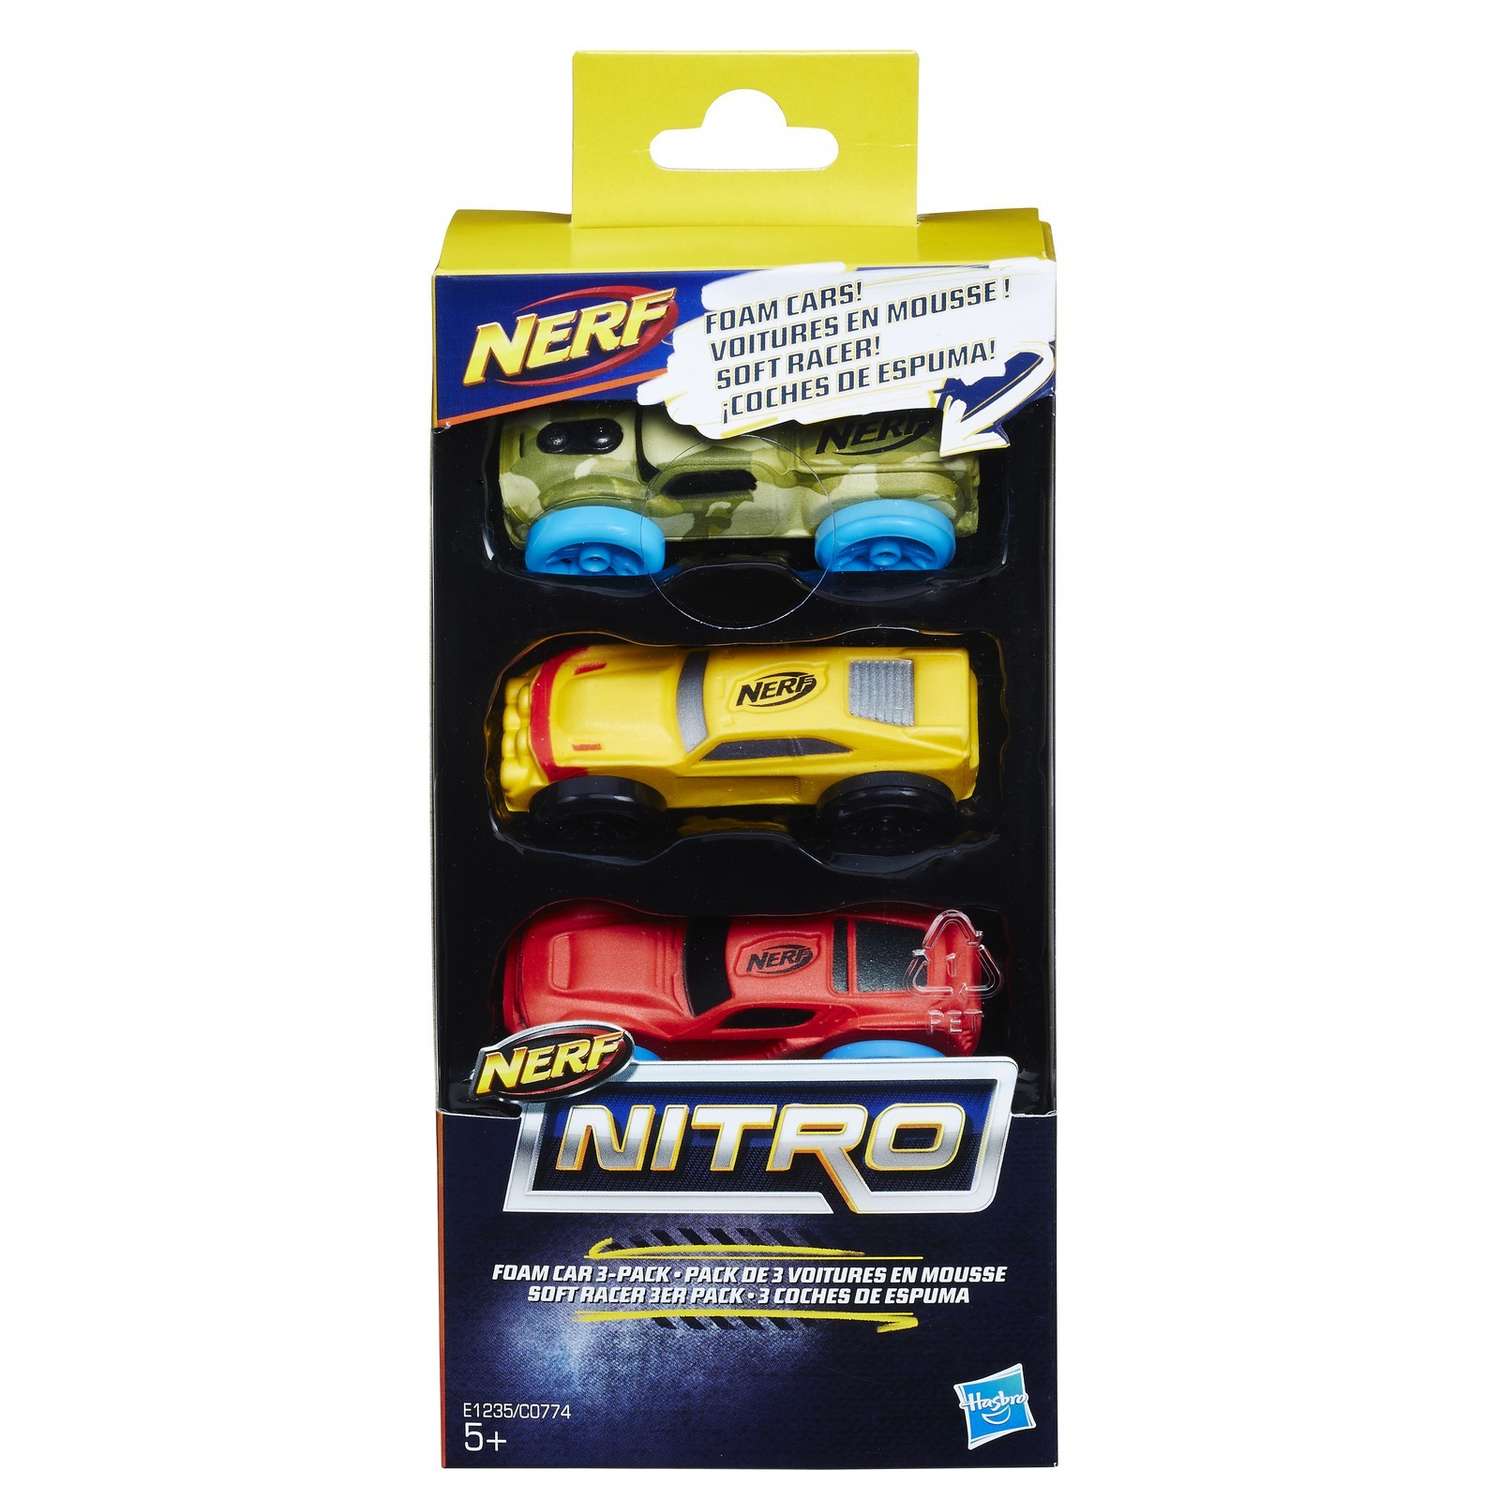 Набор Nerf Nitro 2 (E1235) C0774EU4 - фото 2